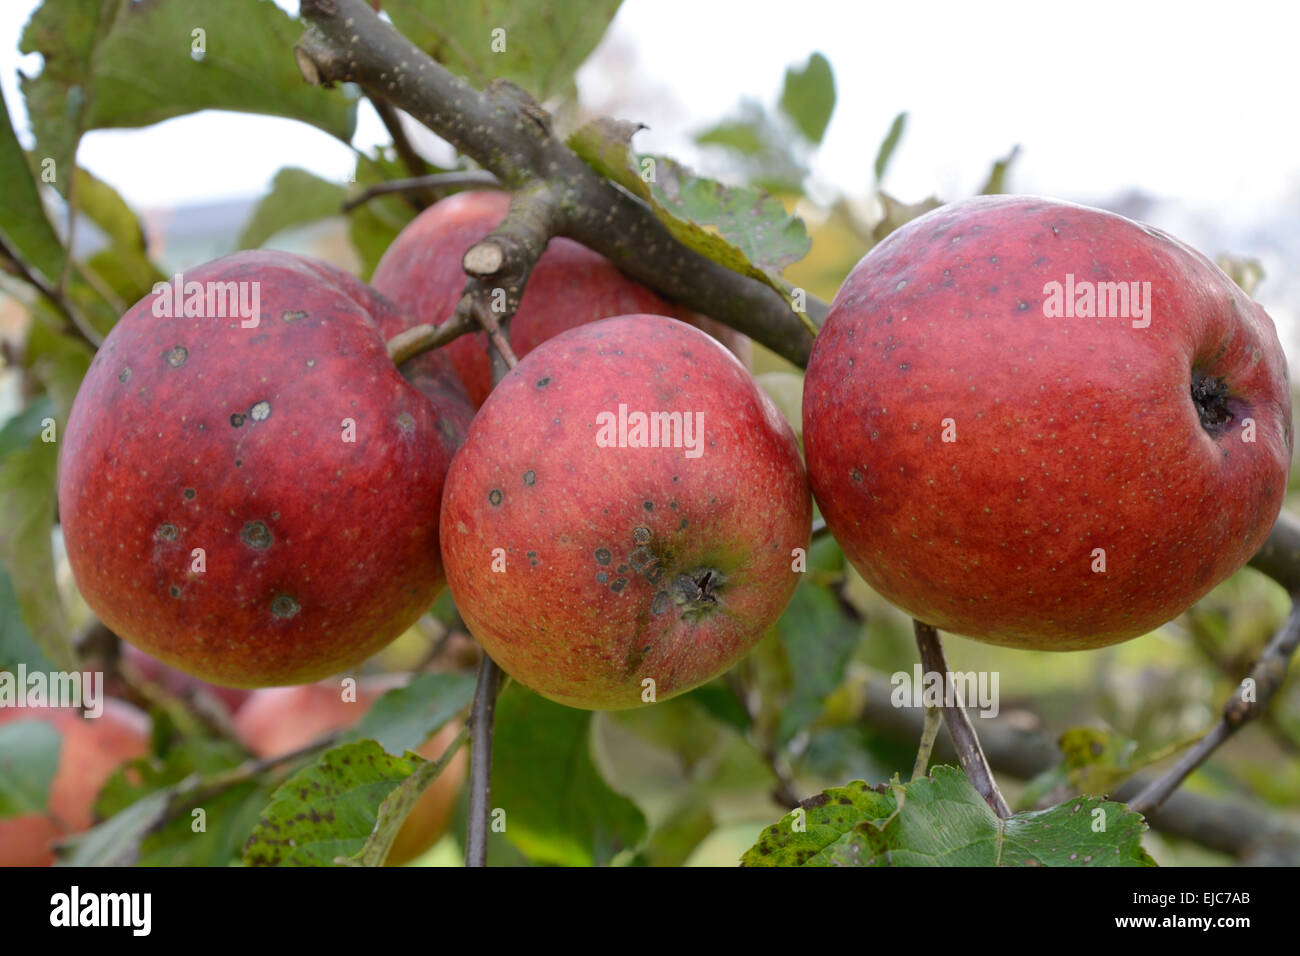 untreated apples on apple tree Stock Photo